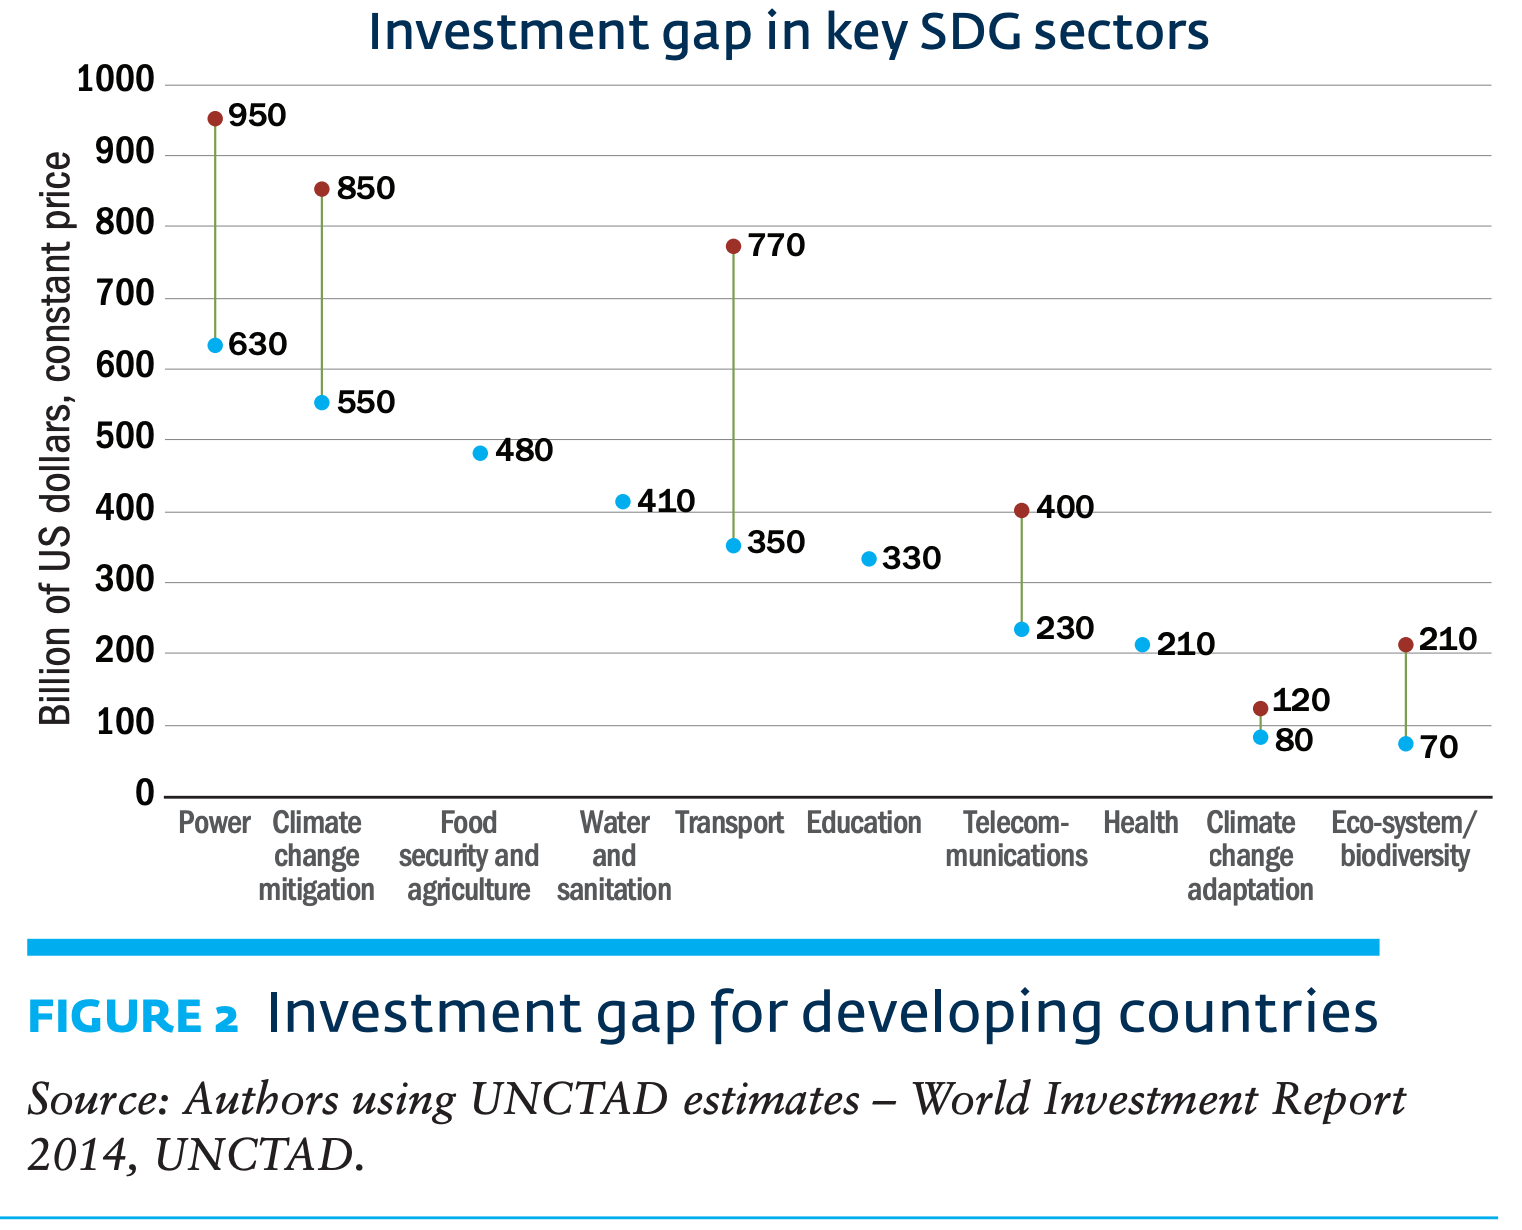 Lacuna de investimento nos principais setores de ODS